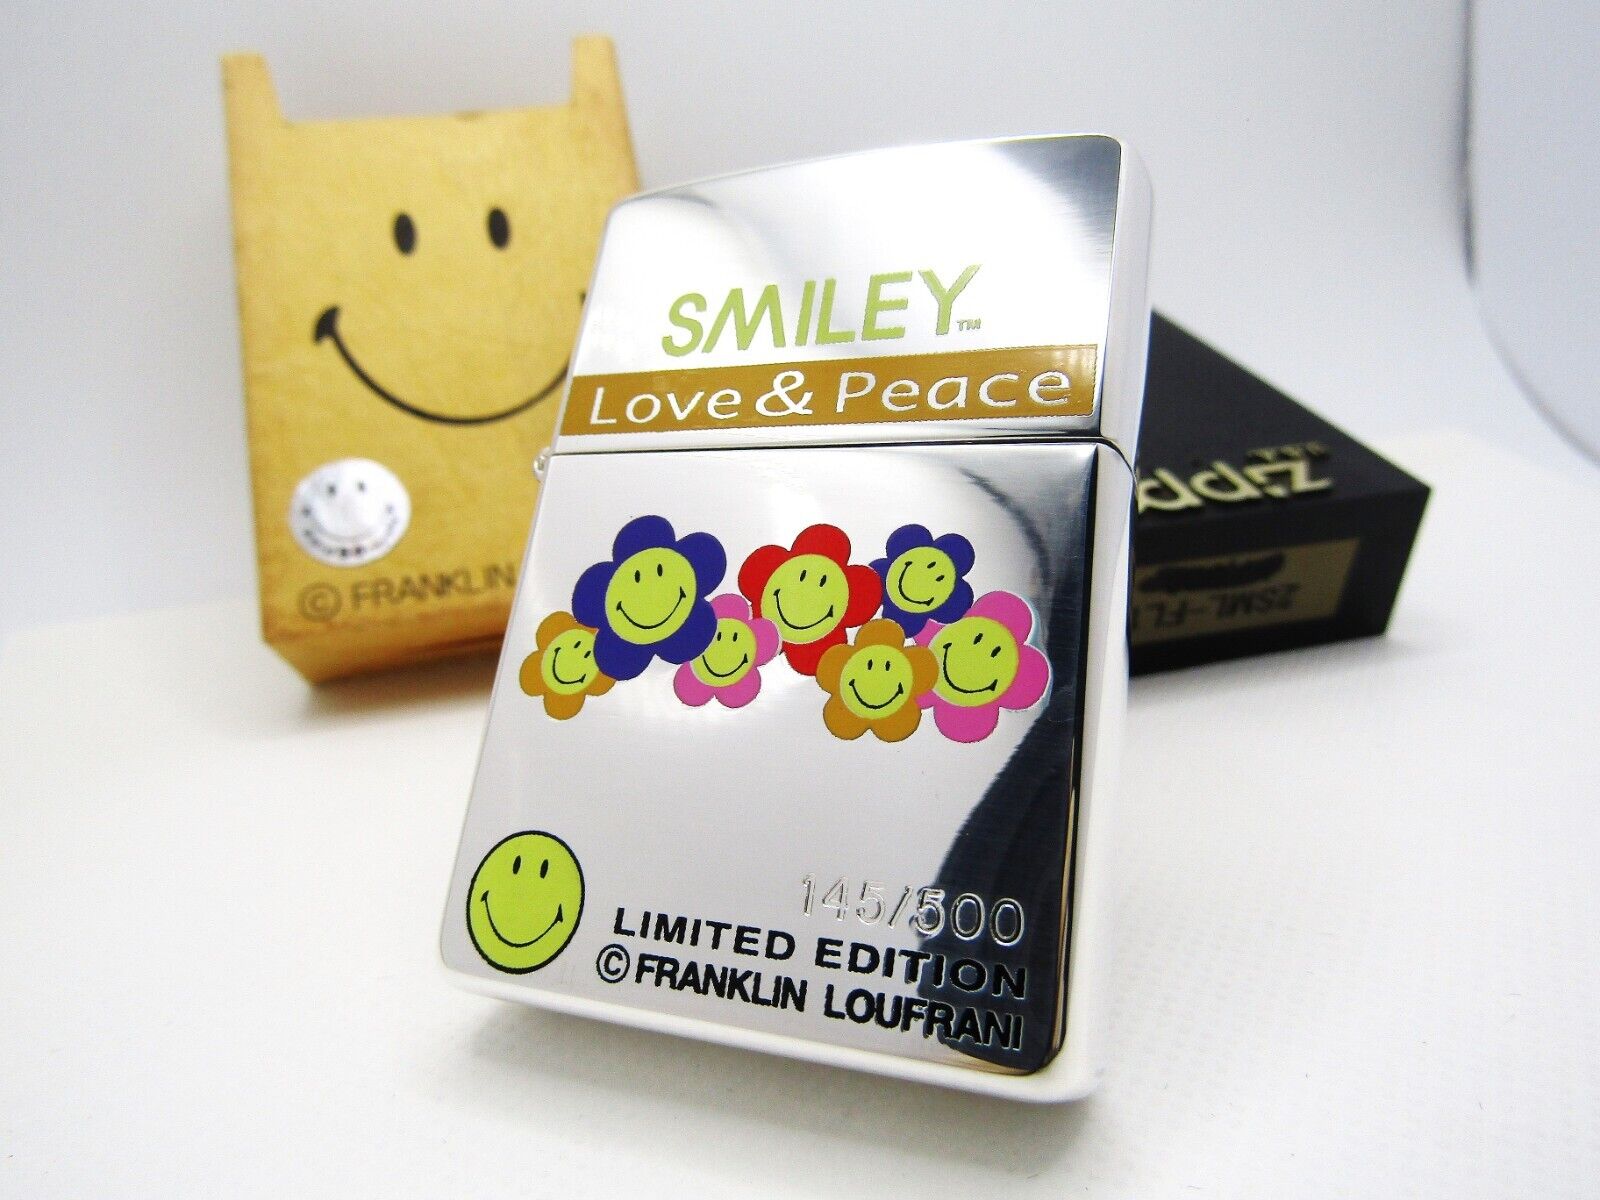 Smiley Love & Peace Limited Franklin Loufrani Zippo 1999 MIB Rare